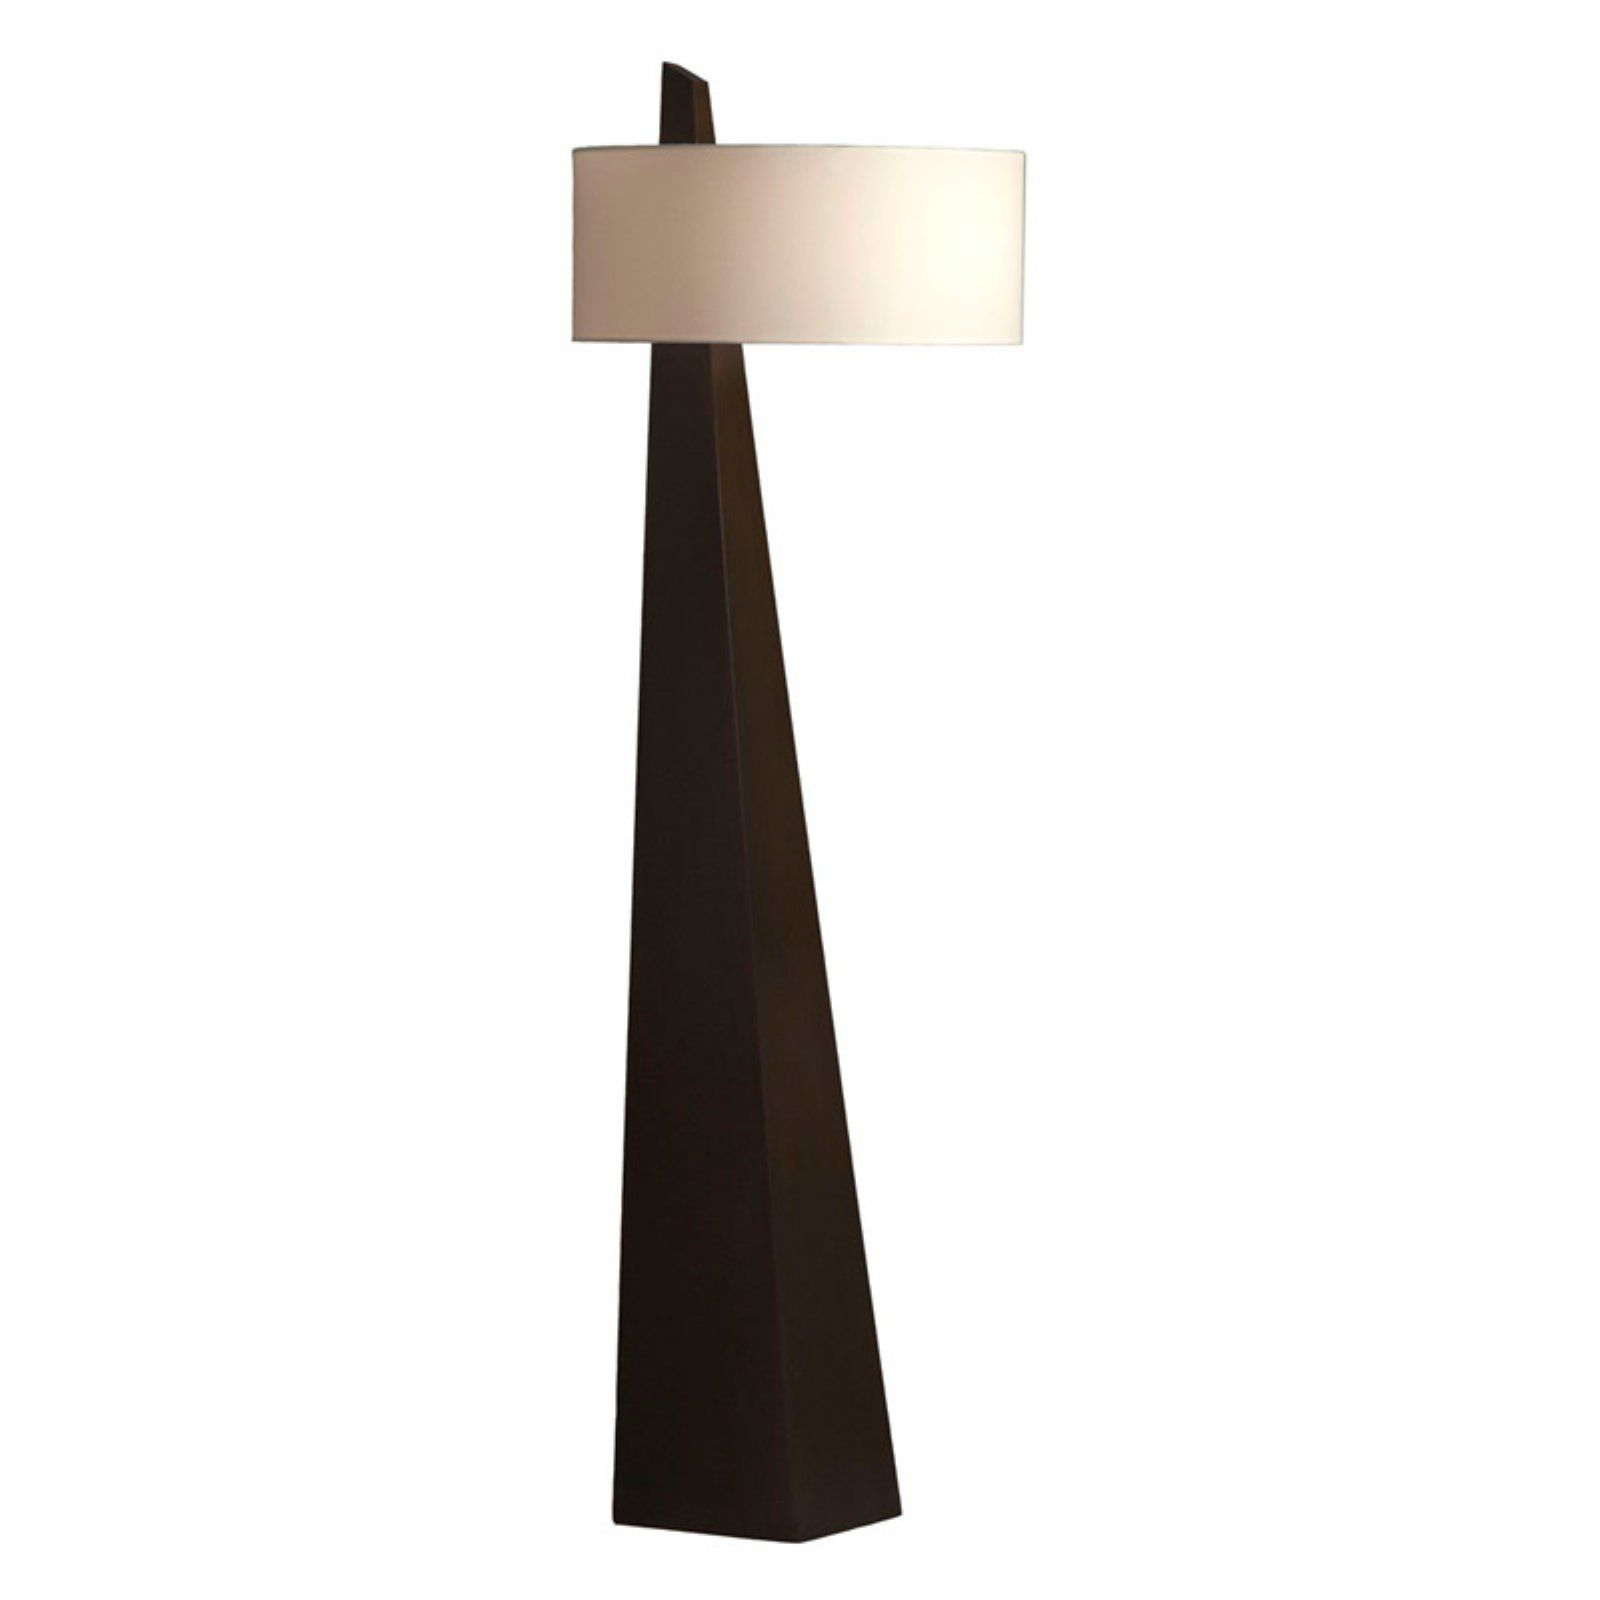 Nova 11891 Obelisk Floor Lamp Products In 2019 Floor throughout size 1600 X 1600